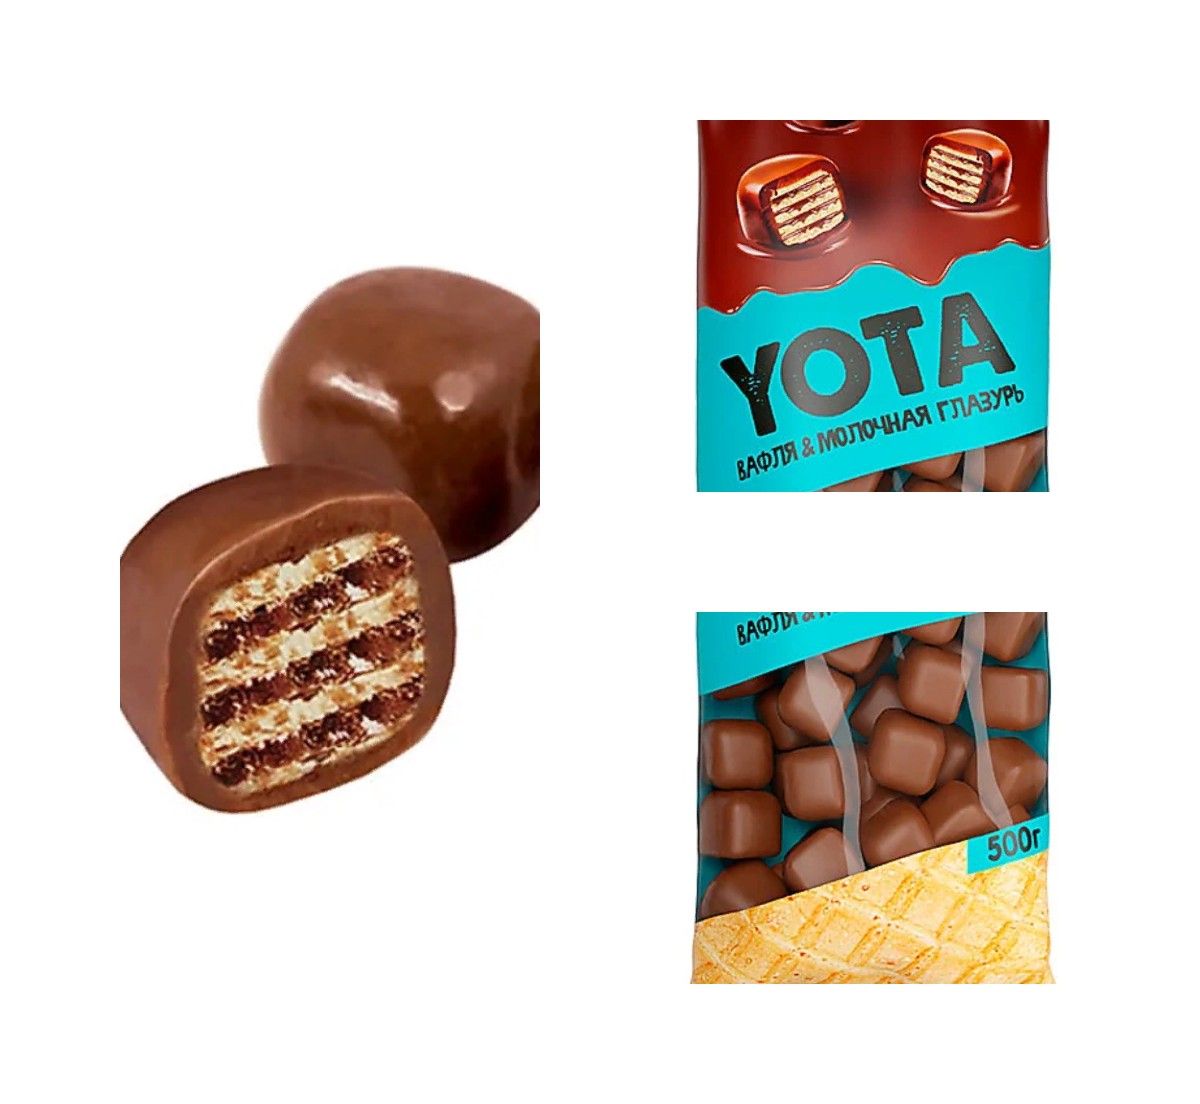 Вафельные драже. Драже вафельный кубик. «Yota», драже вафля в молочно-шоколадной глазури. Йота драже вафельное в Молочном шоколаде. Ета вафельные шарики.